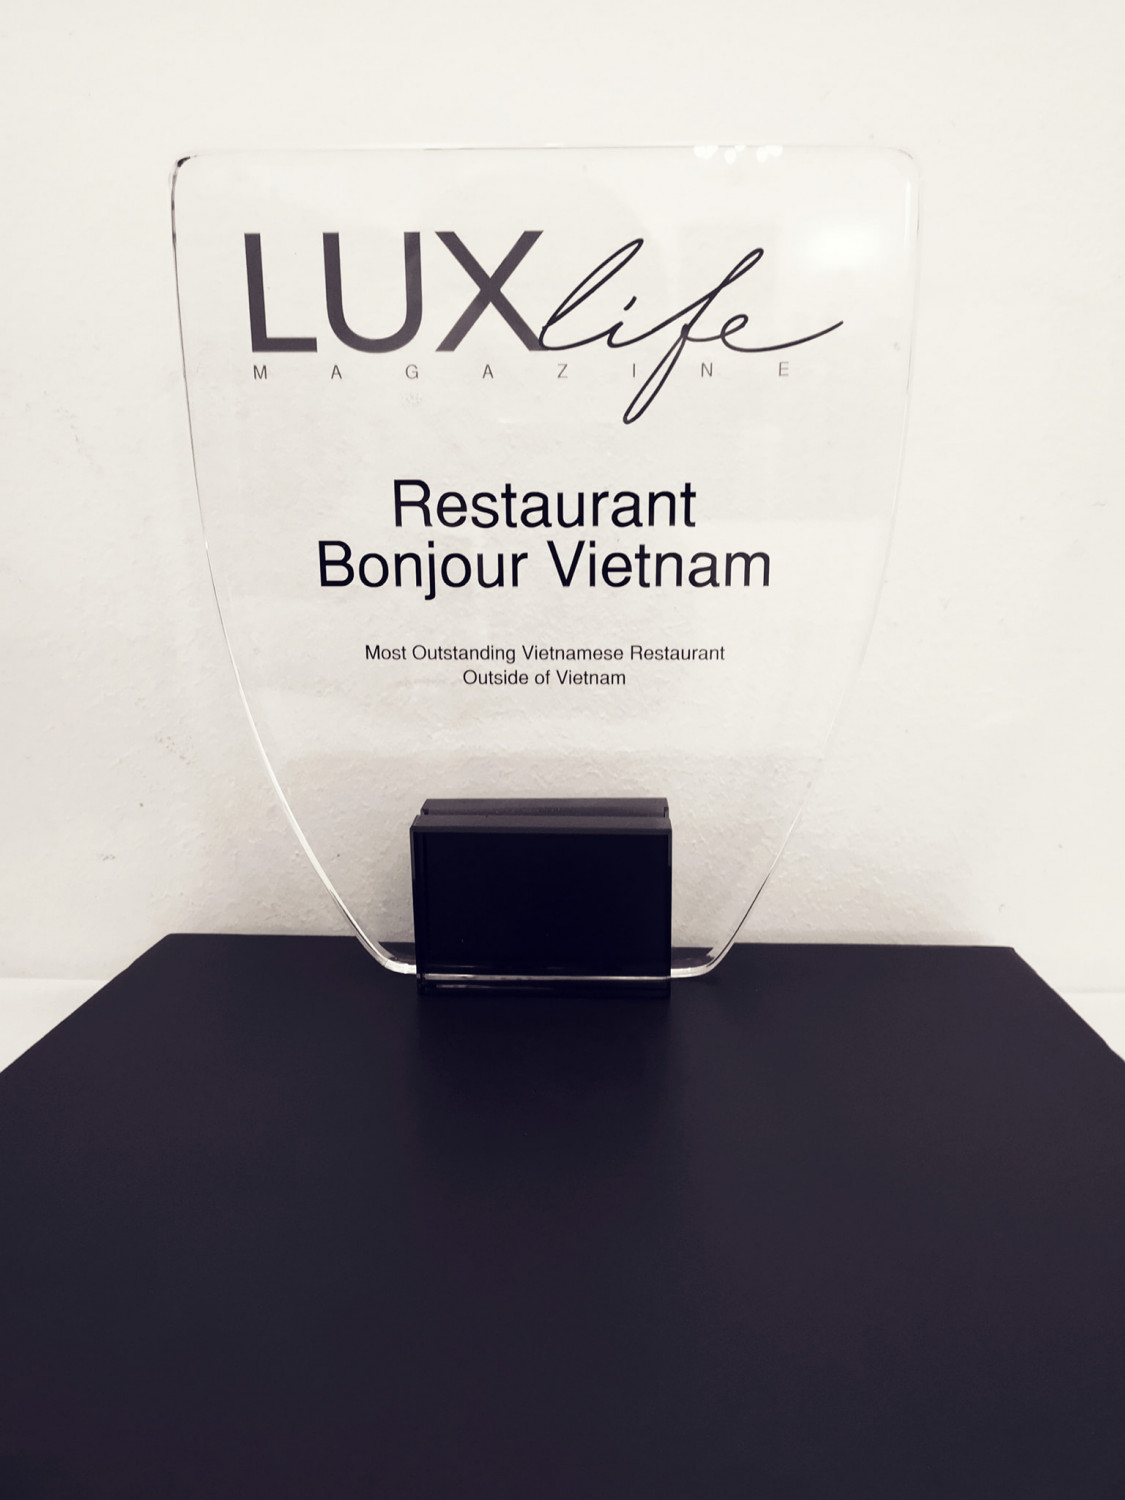 Nhà hàng “Bonjour Vietnam” của chị Trúc Quỳnh 4 năm liền được bình chọn là “Nhà hàng Việt Nam tốt nhất Châu Âu” (European's best Vietnamese restaurant) và nhiều danh hiệu quan trọng khác - Ảnh do nhân vật cung cấp